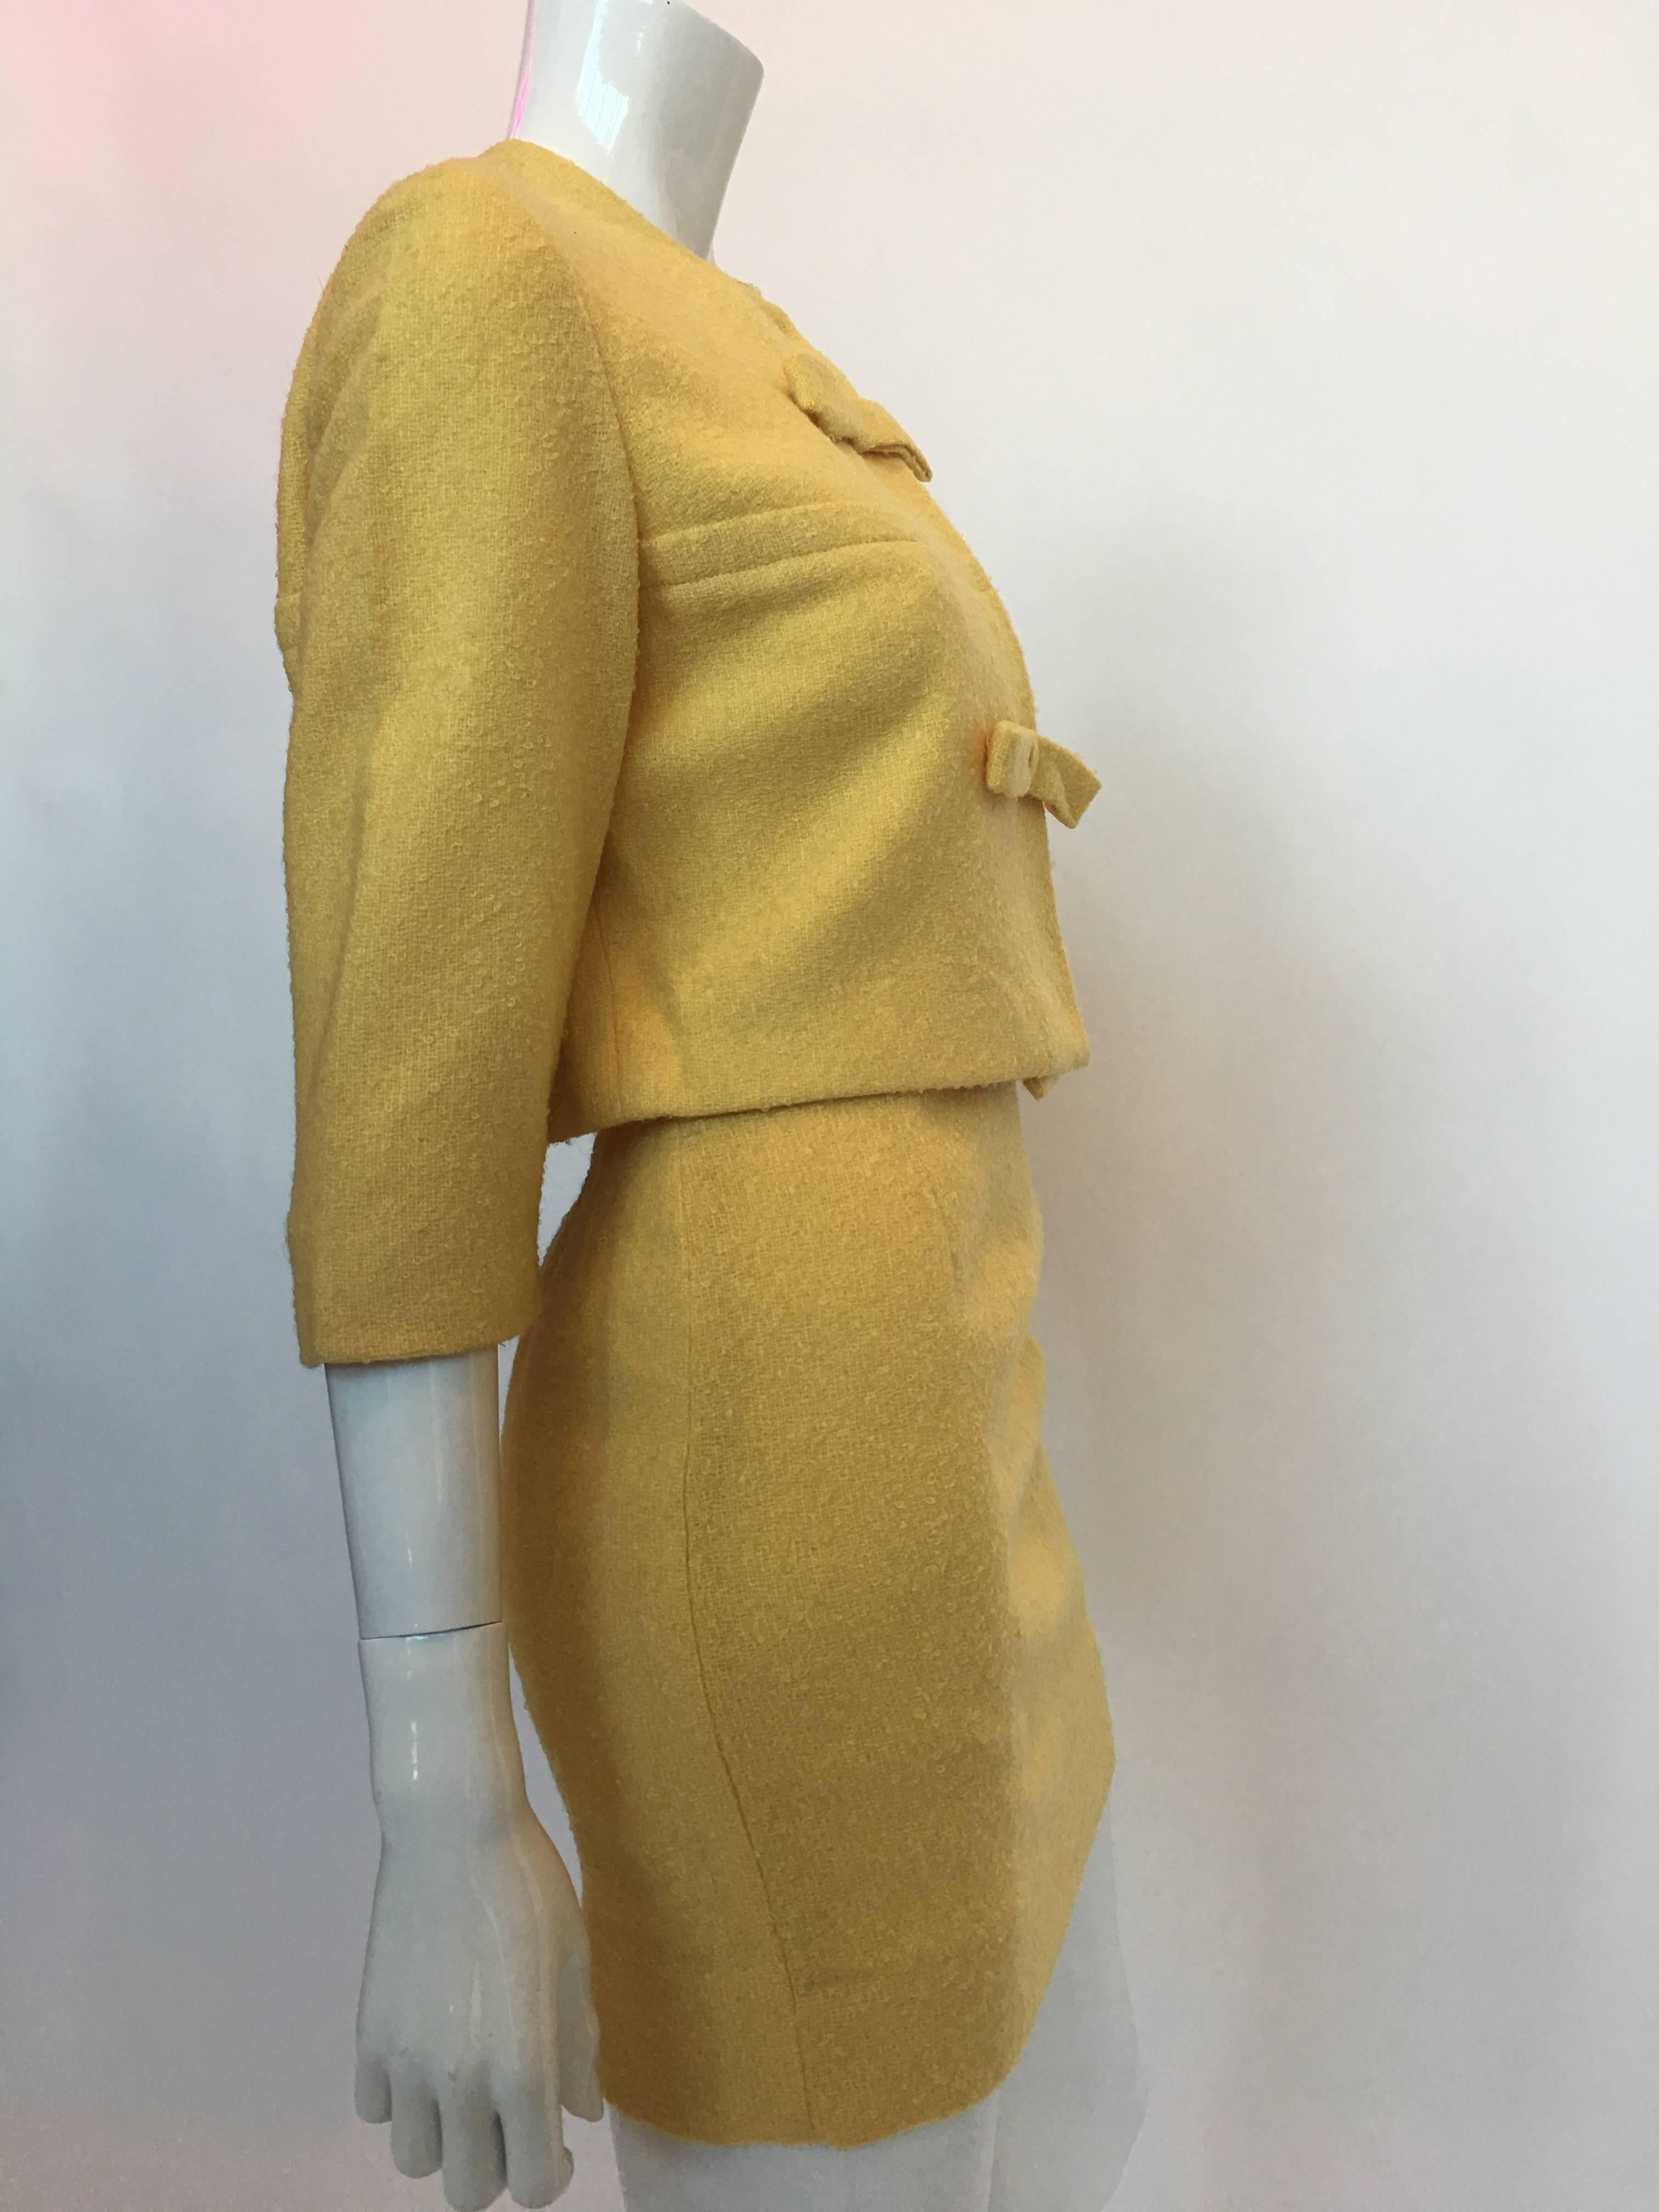 Tailleur jupe 2 pièces Jackie O Mod style papillon jaune beurre, années 1960

Union Label - Fabriqué aux États-Unis
Label de taille : N/A

Toutes les mesures sont prises à plat :
Épaules - d'une couture à l'autre : 15,5